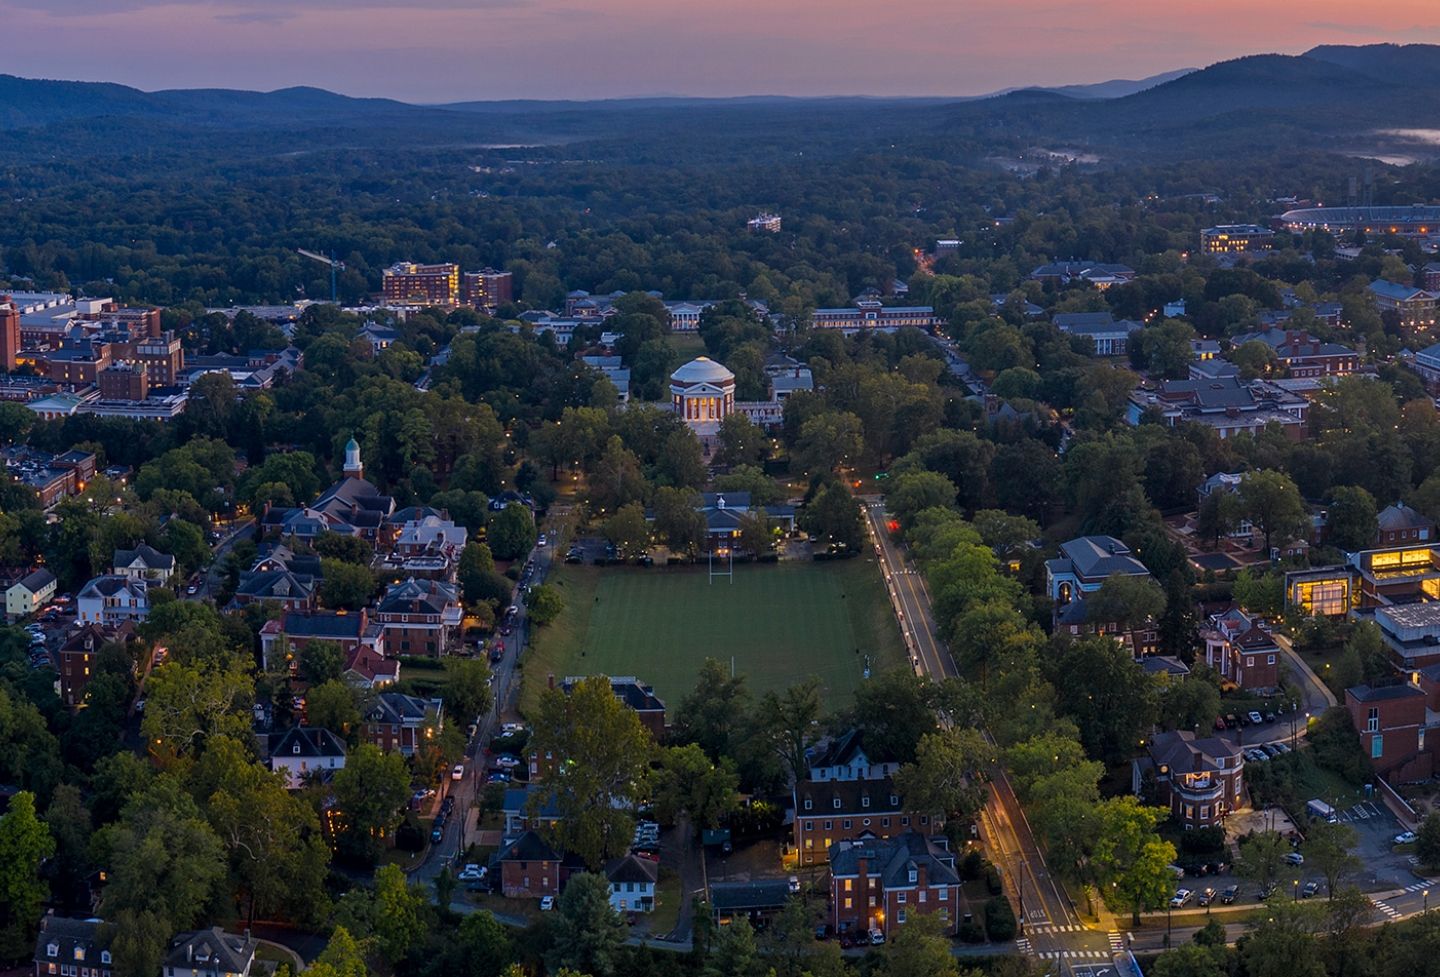 Aerial view of UVA